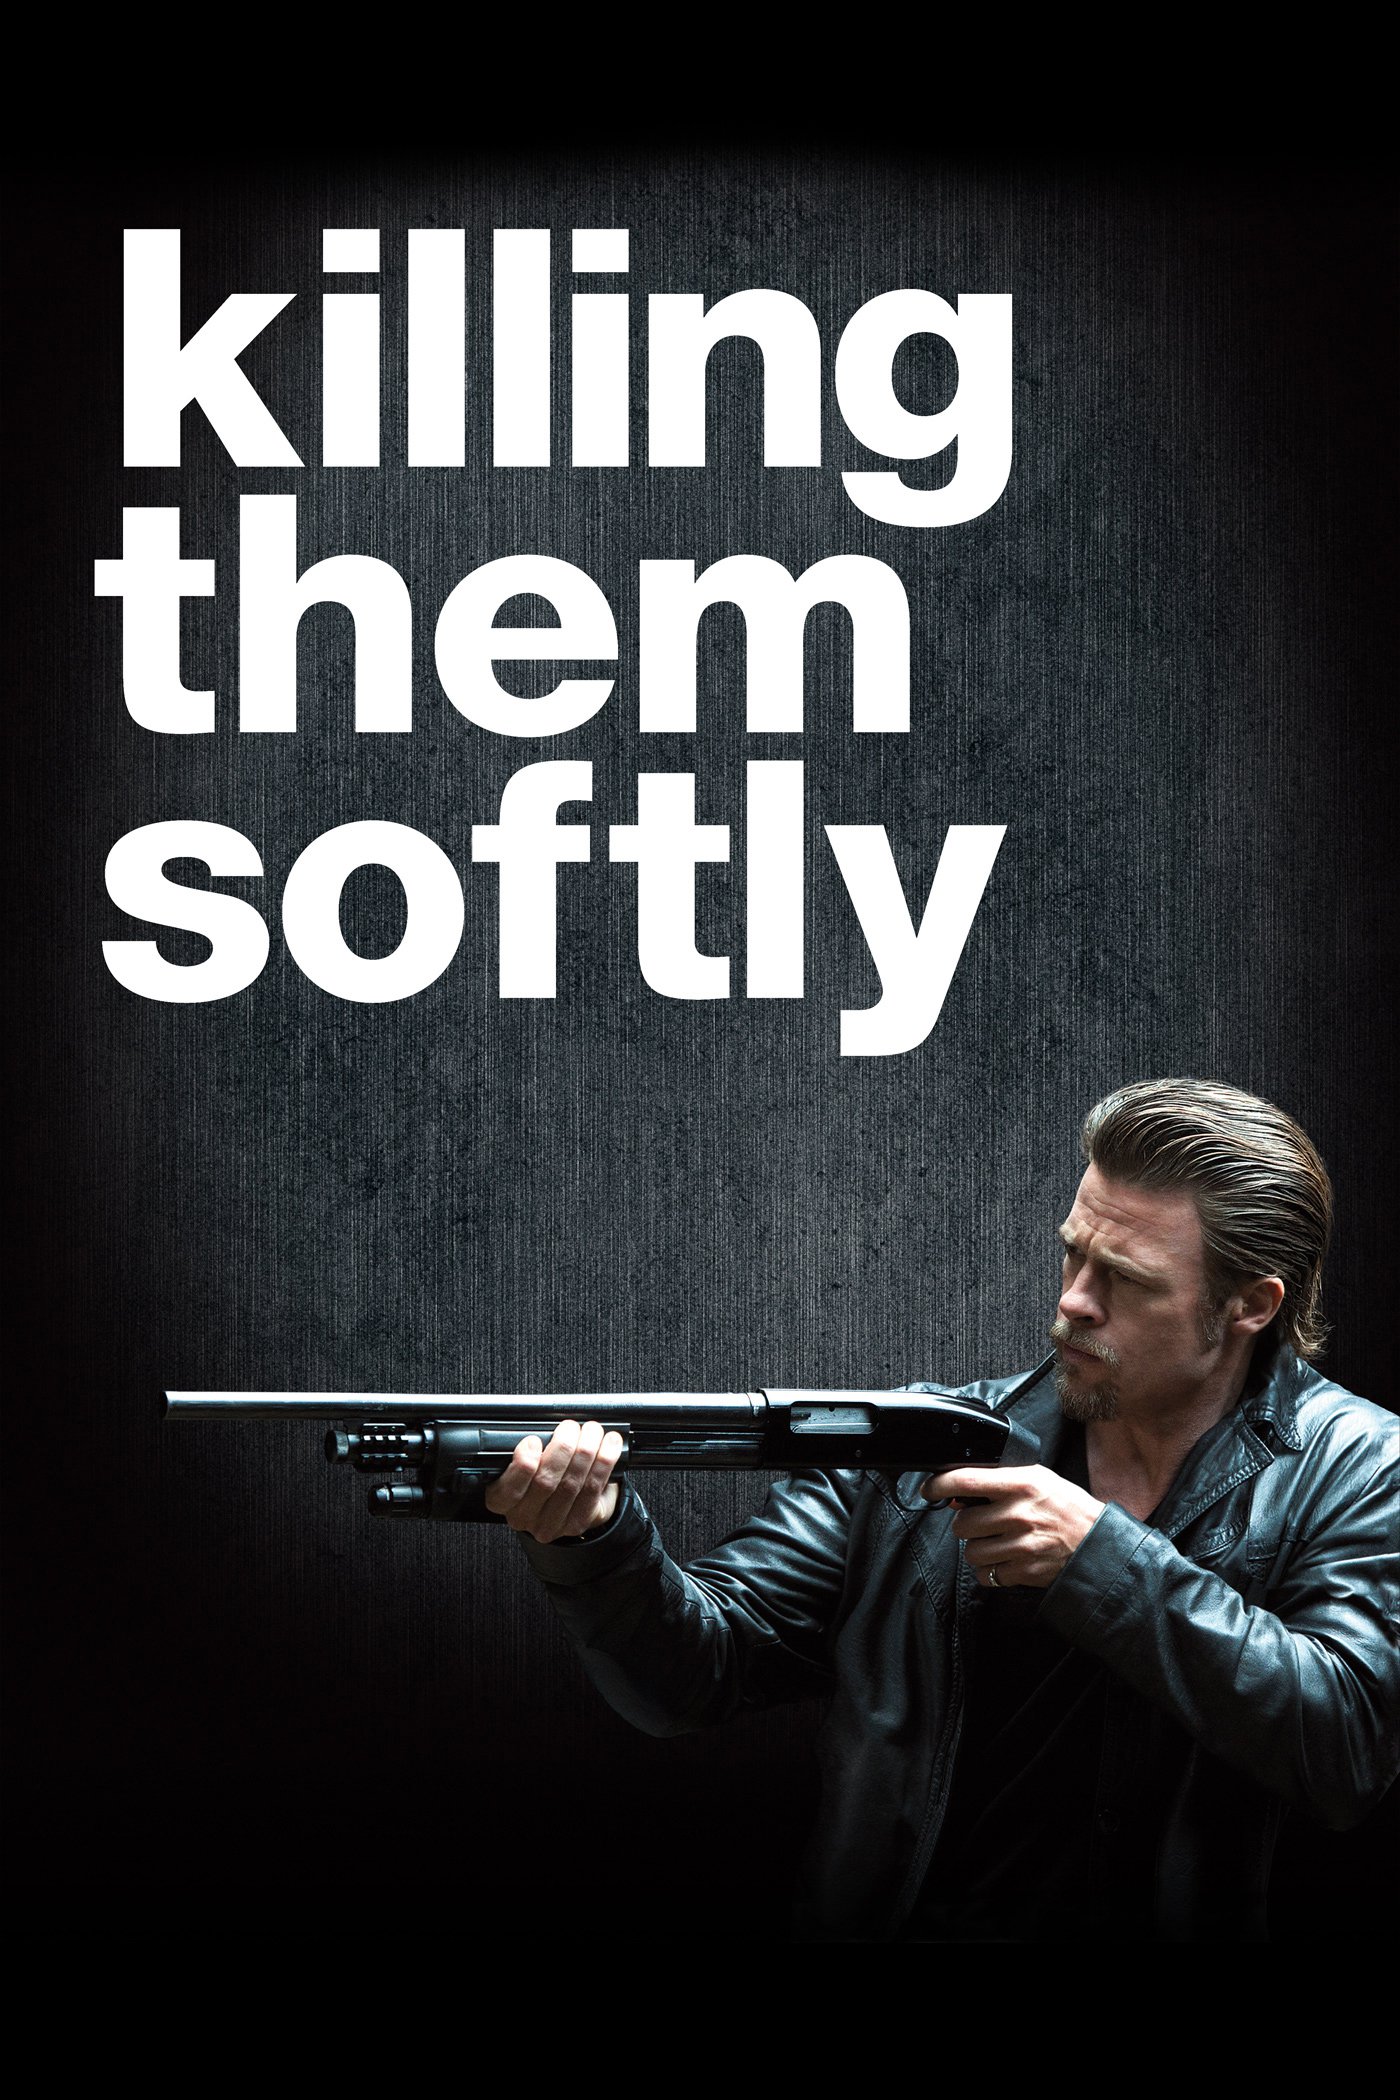 Plakat von "Killing Them Softly"